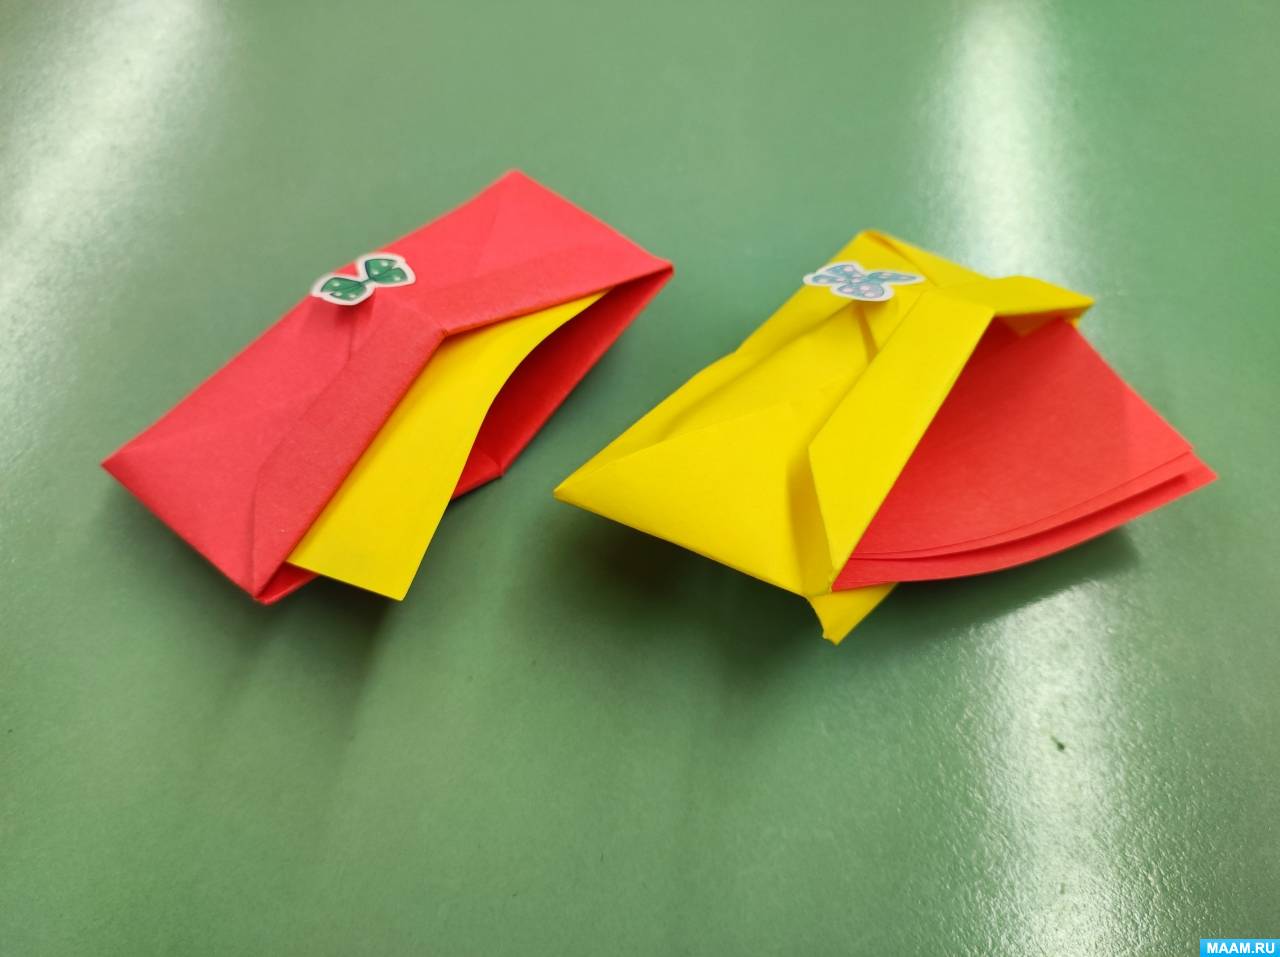 Кошелек-оригами (Diy) / Простые выкройки / ВТОРАЯ УЛИЦА - Мода, Выкройки, Рукоделие, DIY